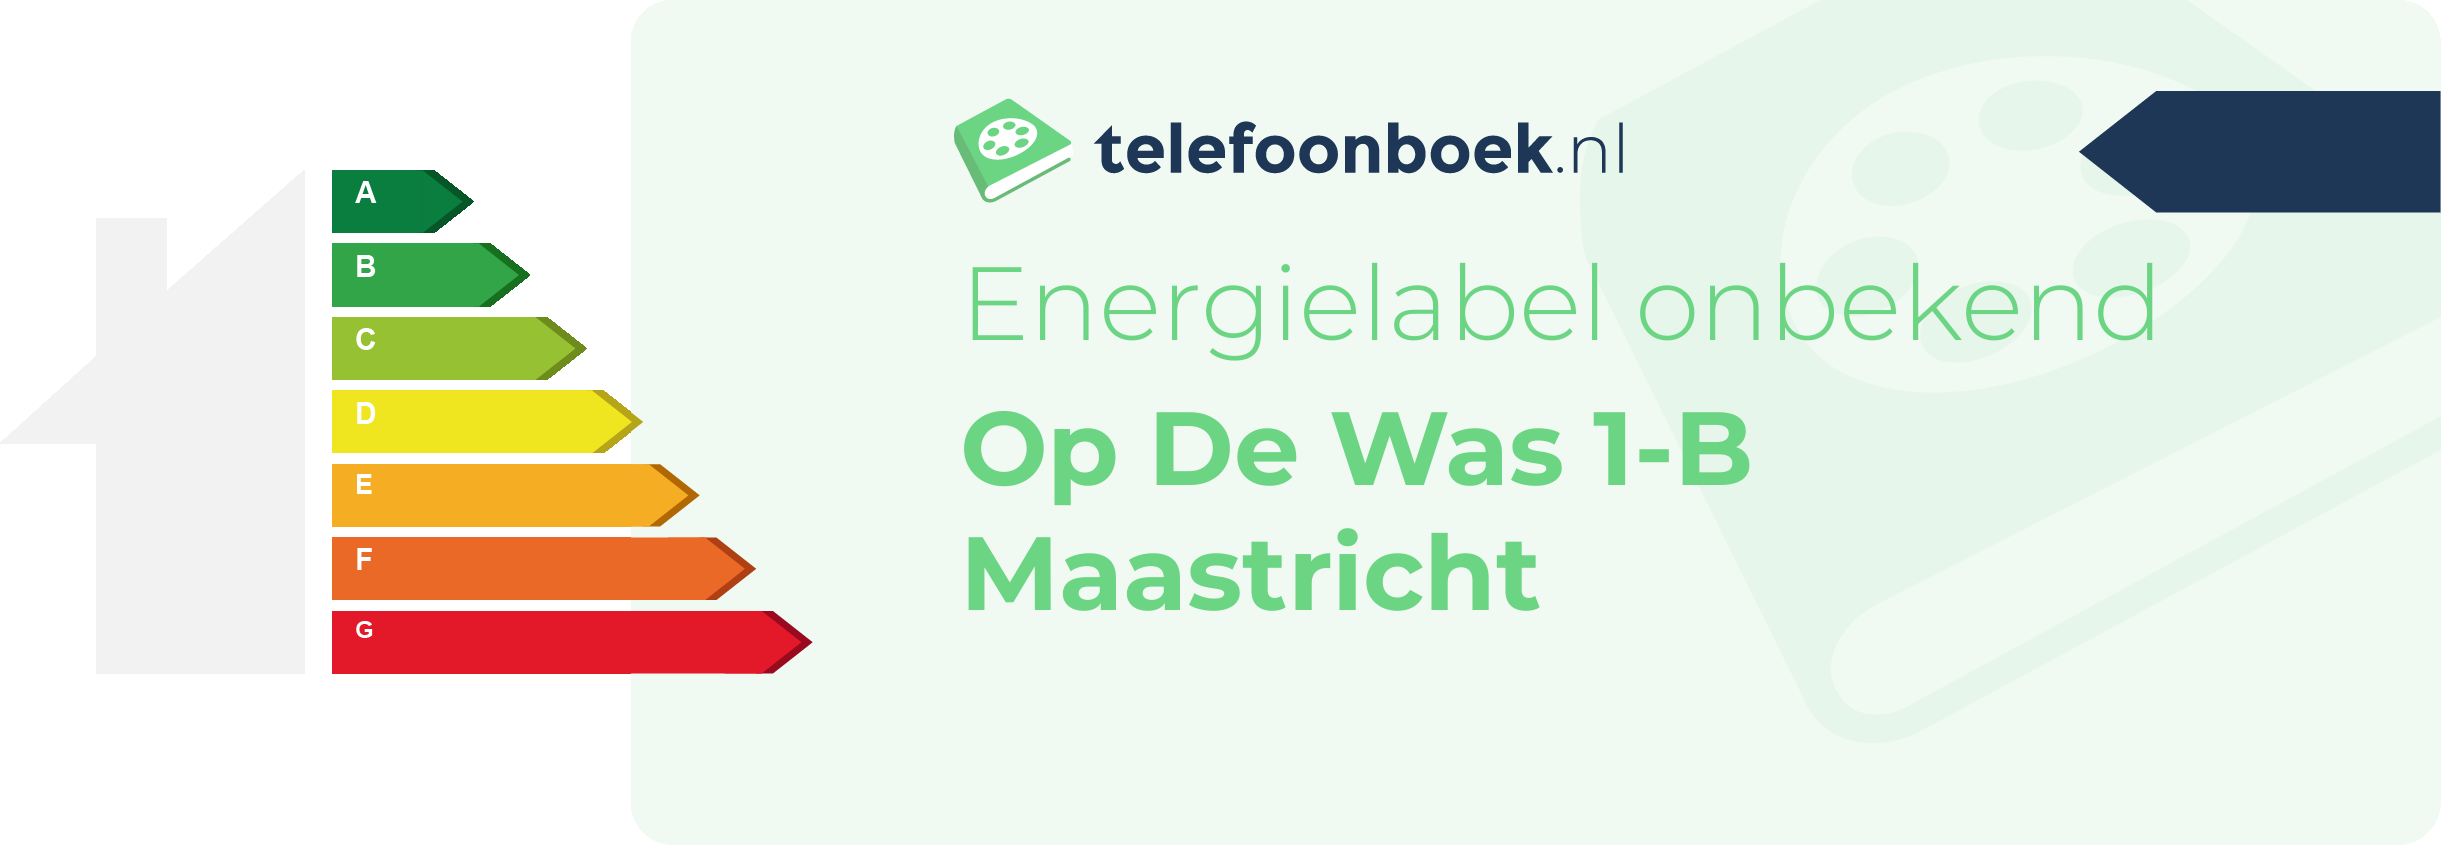 Energielabel Op De Was 1-B Maastricht